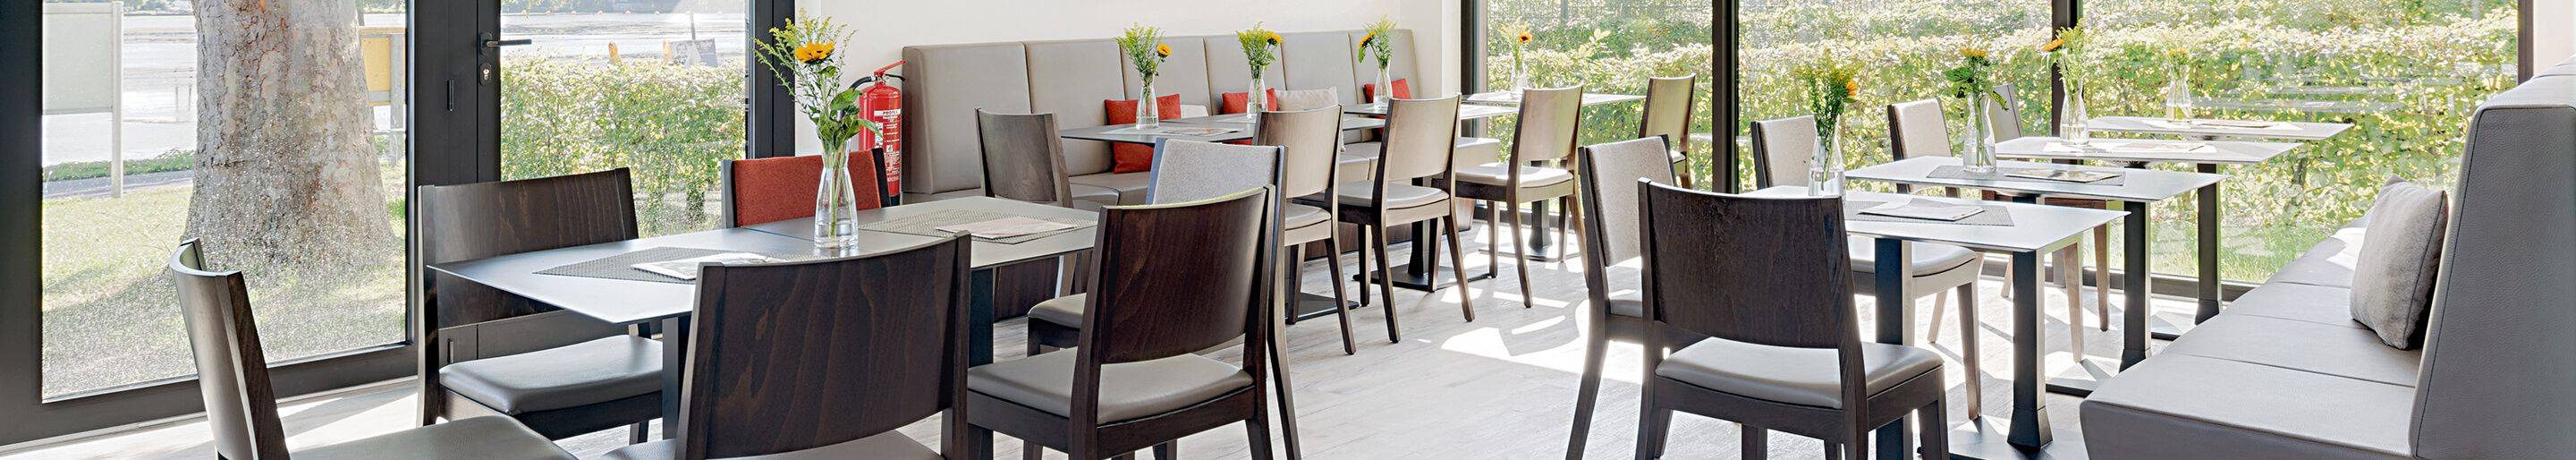 Indoor Restaurantstühle für Gastronomie oder Hotellerie